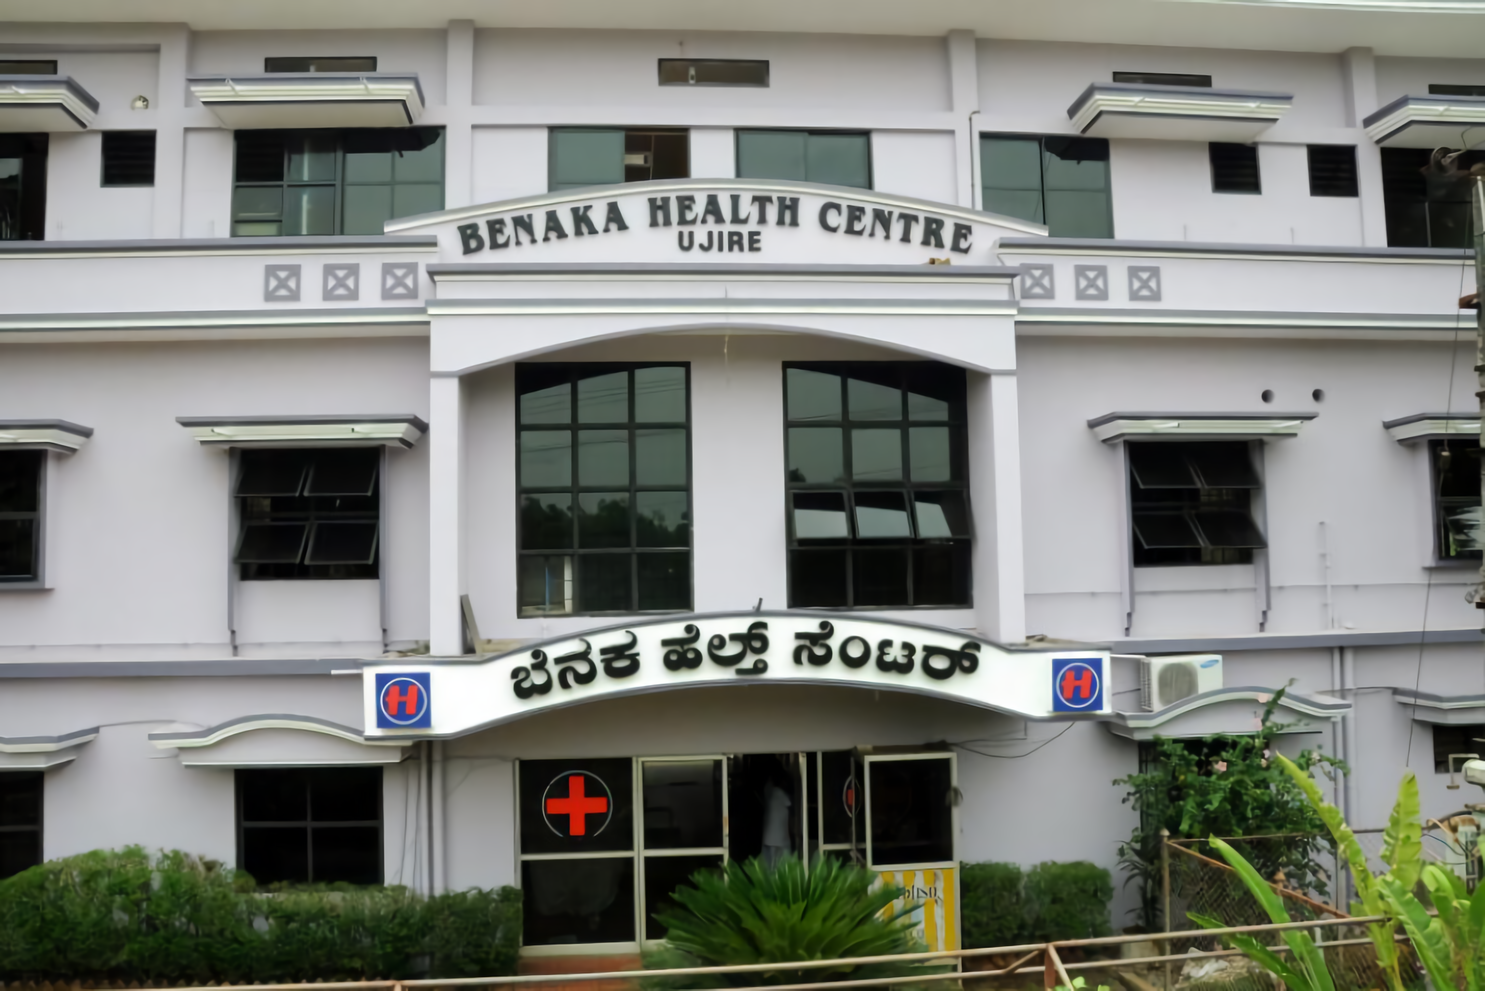 Benaka Health Centre